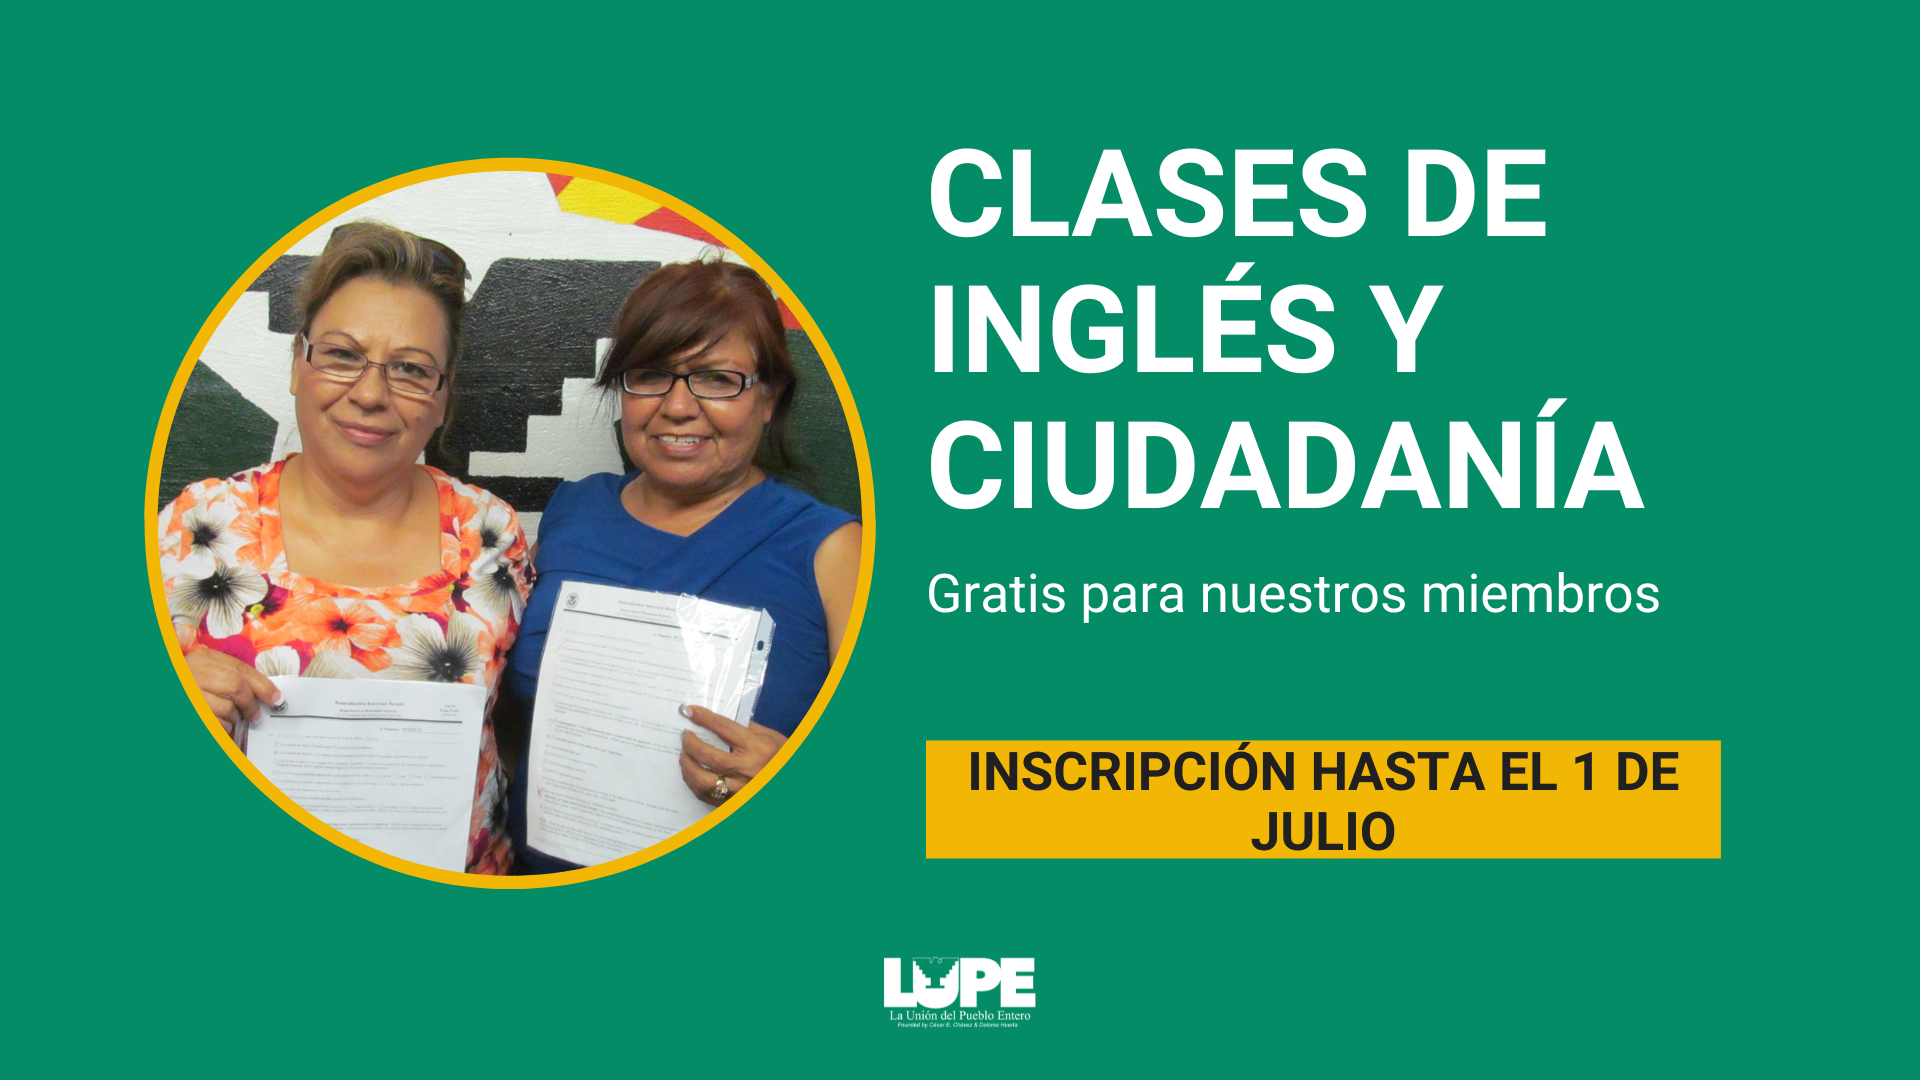 Featured image for “Inscripciones abiertas: clases de inglés y ciudadanía”